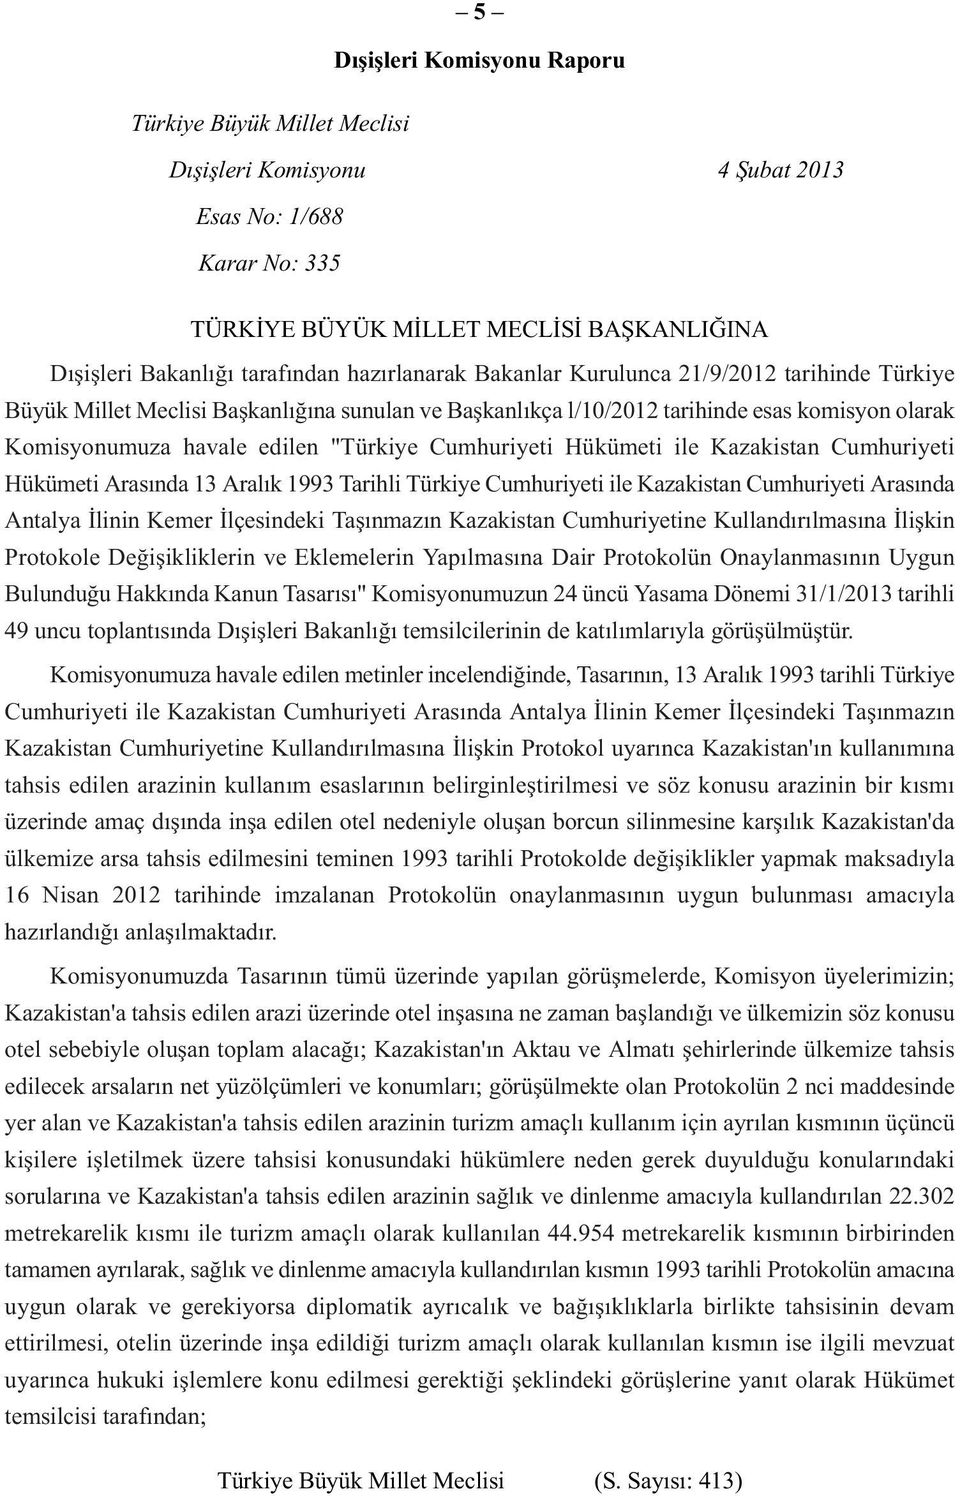 Cumhuriyeti Hükümeti ile Kazakistan Cumhuriyeti Hükümeti Arasında 13 Aralık 1993 Tarihli Türkiye Cumhuriyeti ile Kazakistan Cumhuriyeti Arasında Antalya İlinin Kemer İlçesindeki Taşınmazın Kazakistan